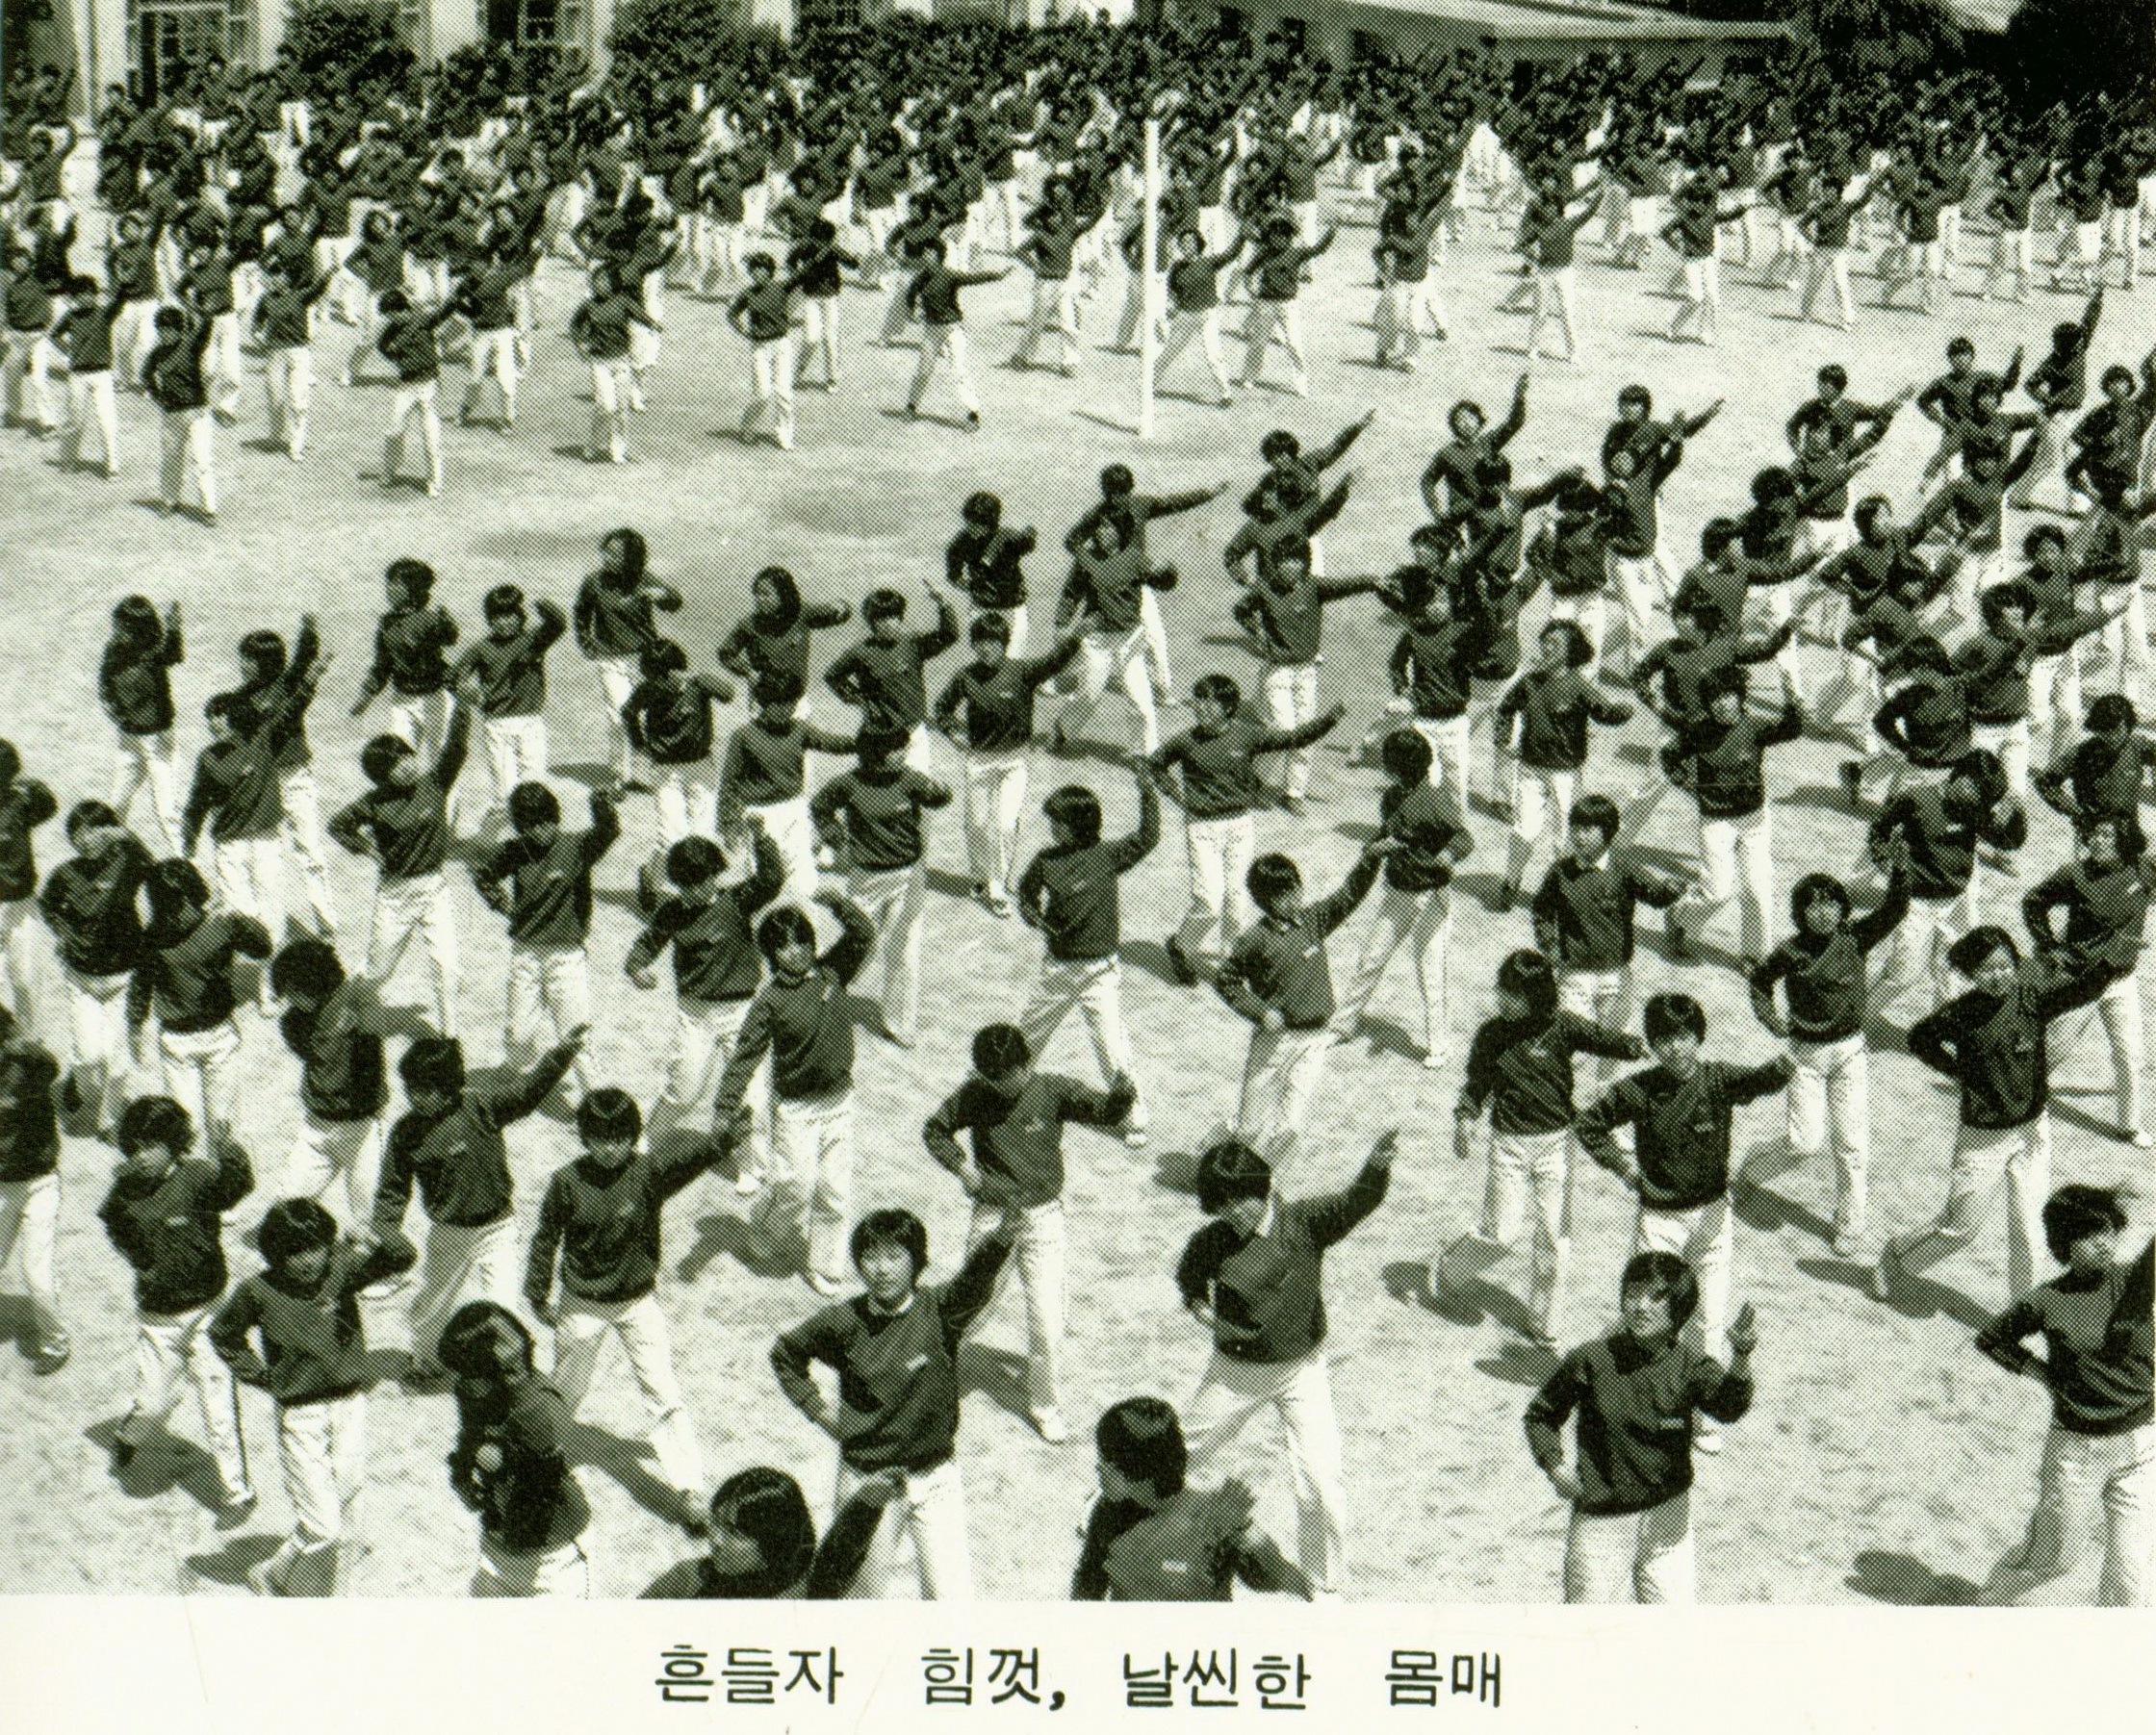 
															
															
																
																	성지여자중학교 체조시간 - 1984년 [1번째 이미지]
																
																
															
														